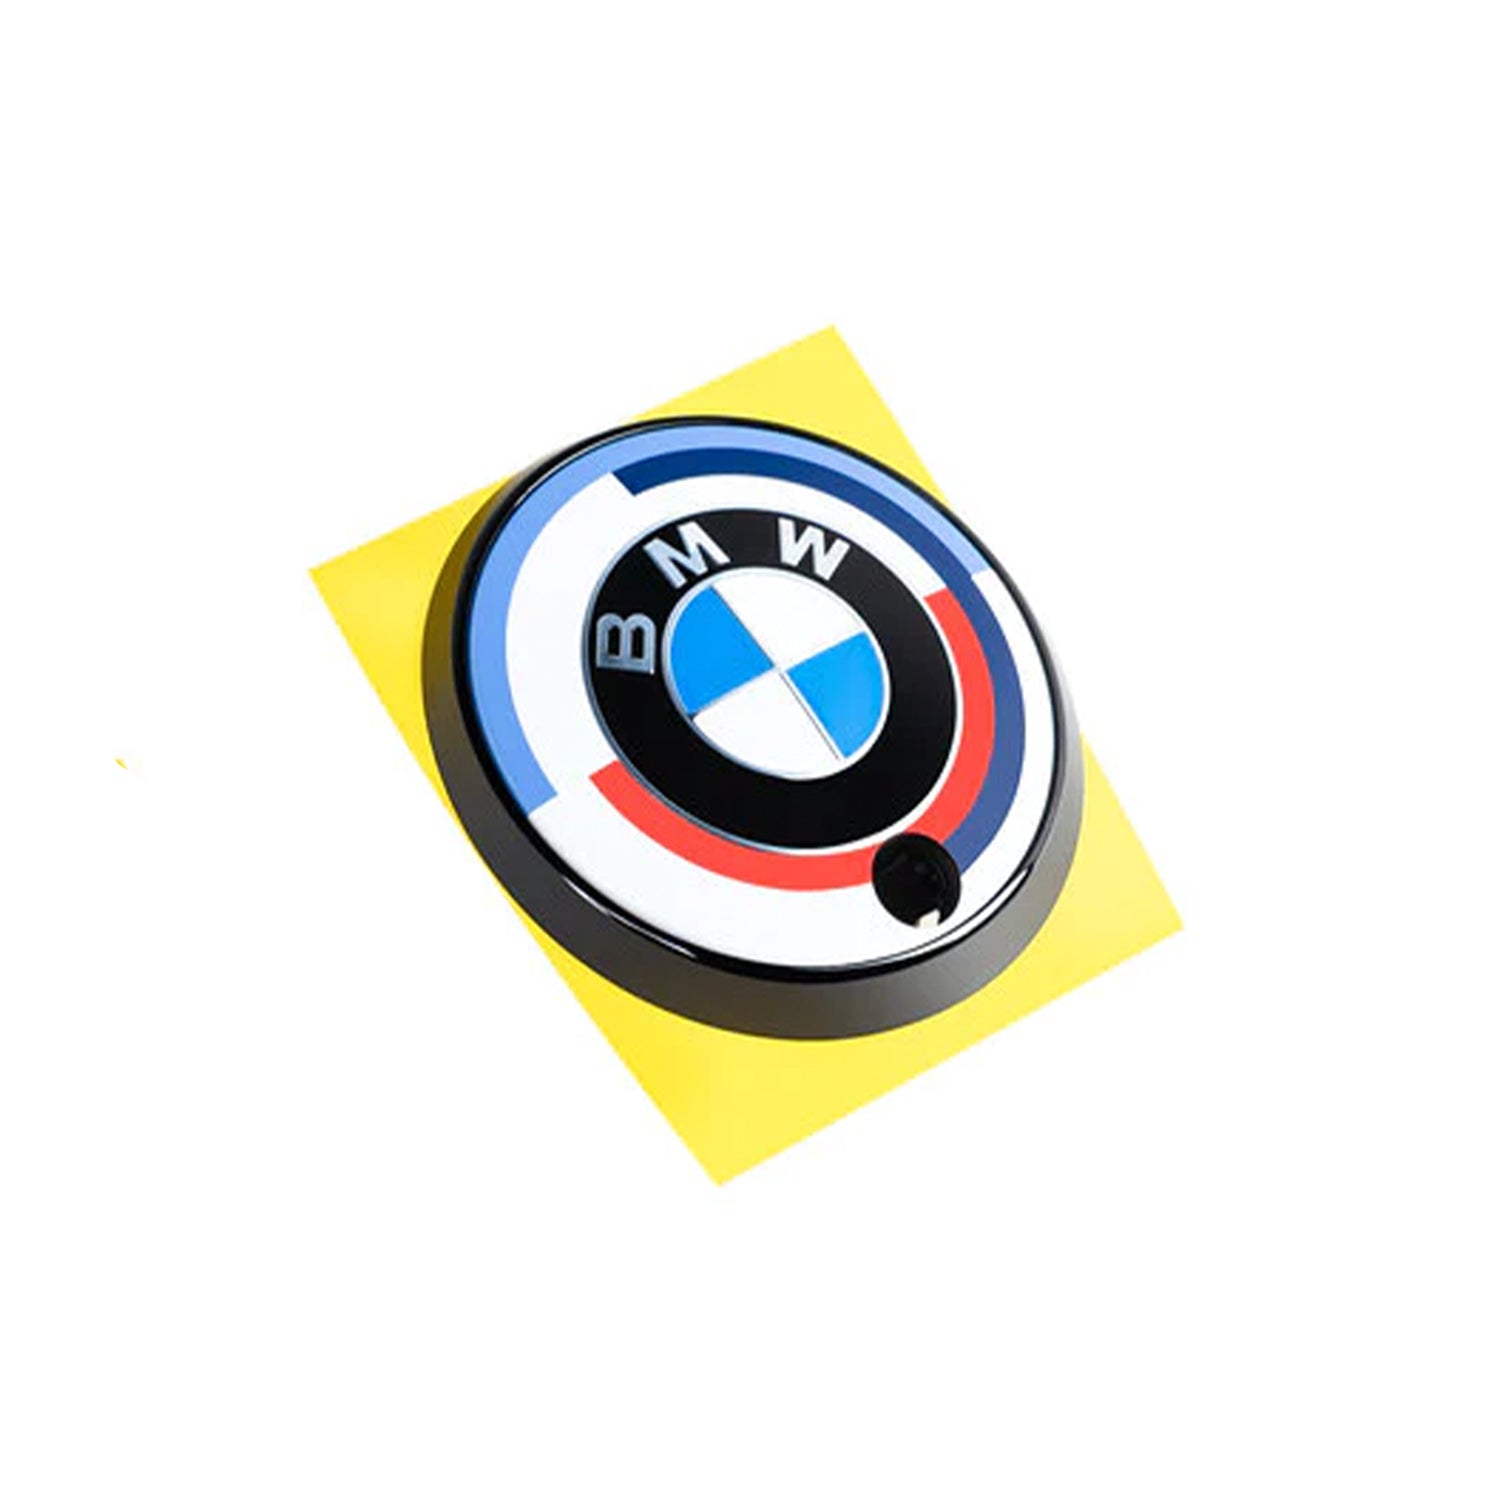 BMW M 50 Year Anniversary Heritage Roundel Set - G01 X3